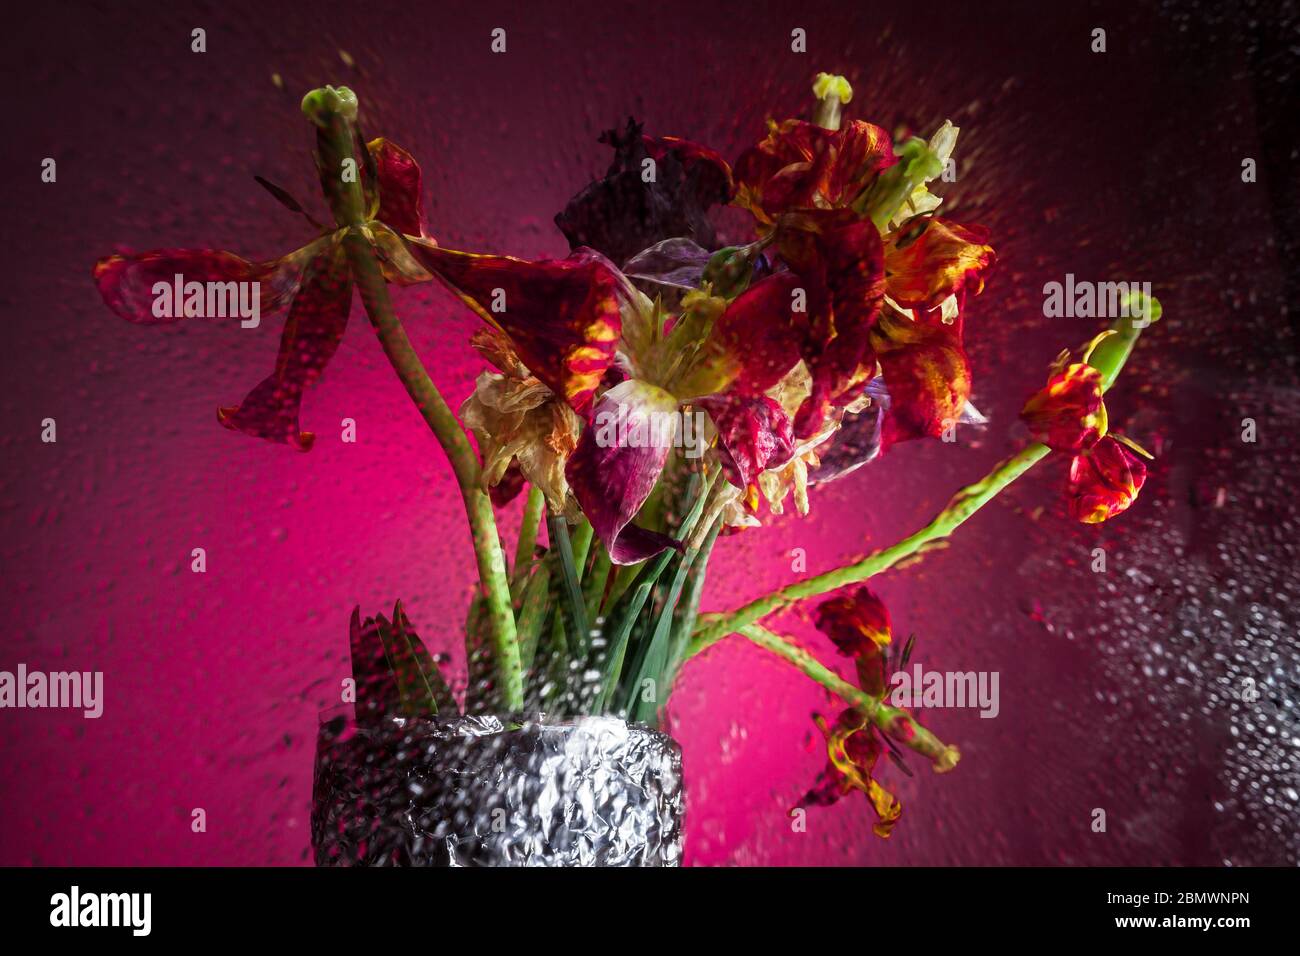 Getrocknete Tulpen durch das Glas in Tropfen, roter Hintergrund, das Konzept der Schönheit in allem. Stockfoto